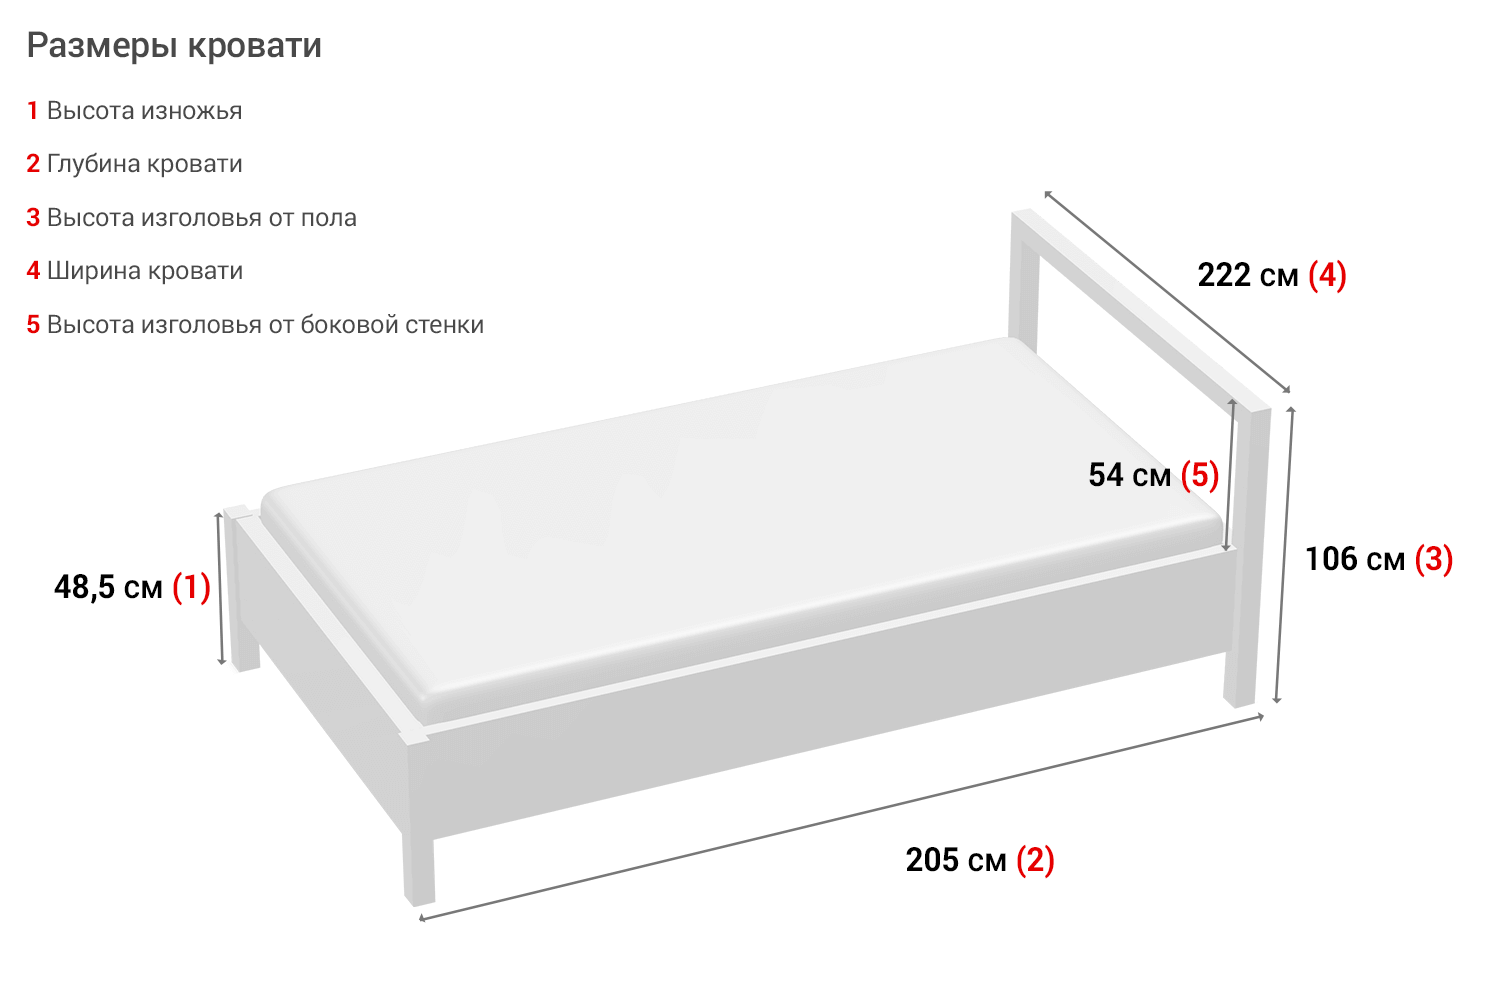 Какие бывают размеры матрасов для взрослой и детской кровати